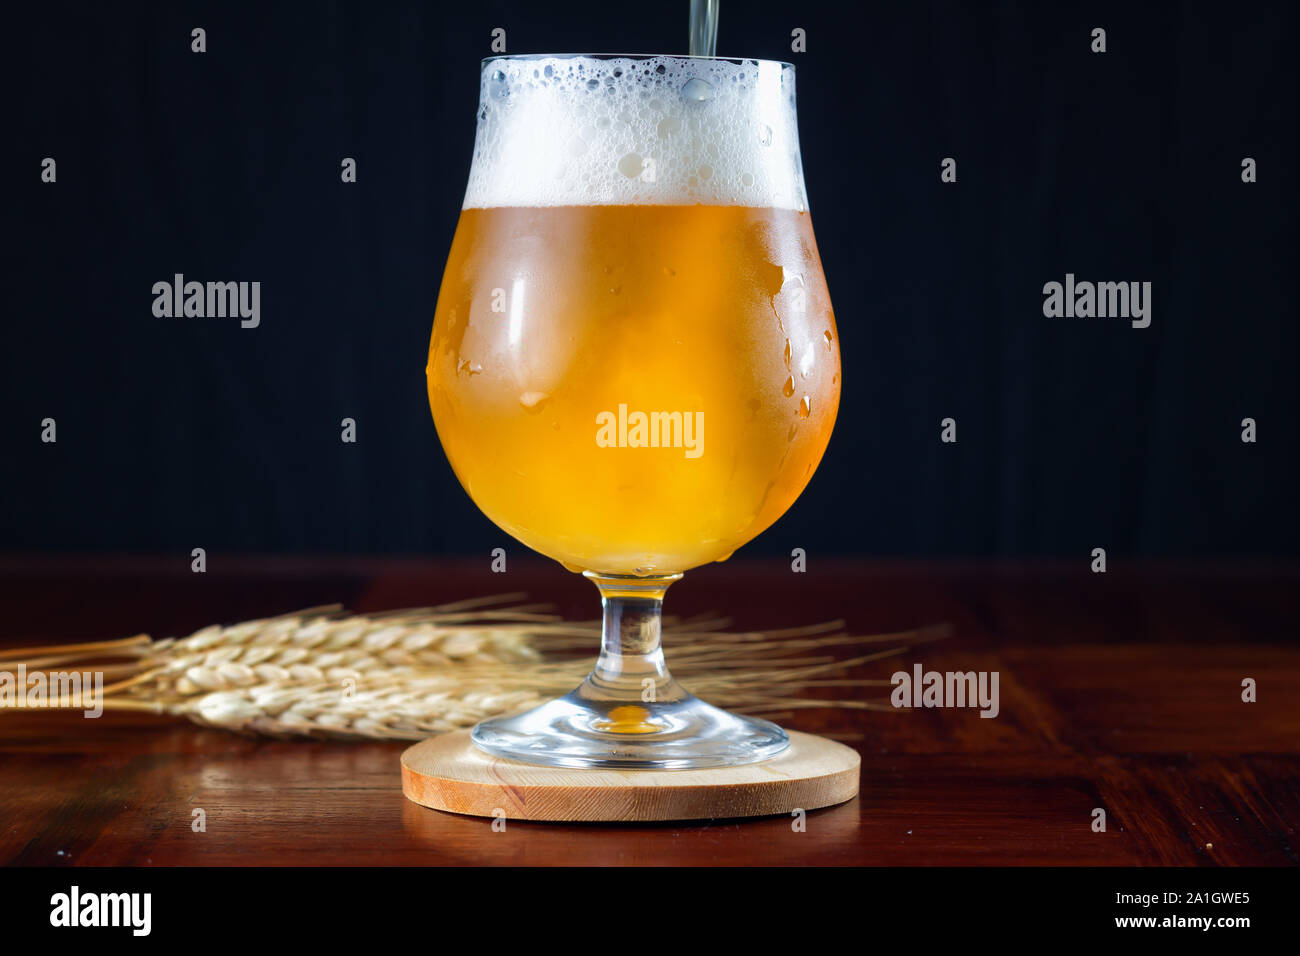 IPA nebuloso cerveza artesanal que se vierte en un vaso de cerveza con forma de tulipán. Foto de stock